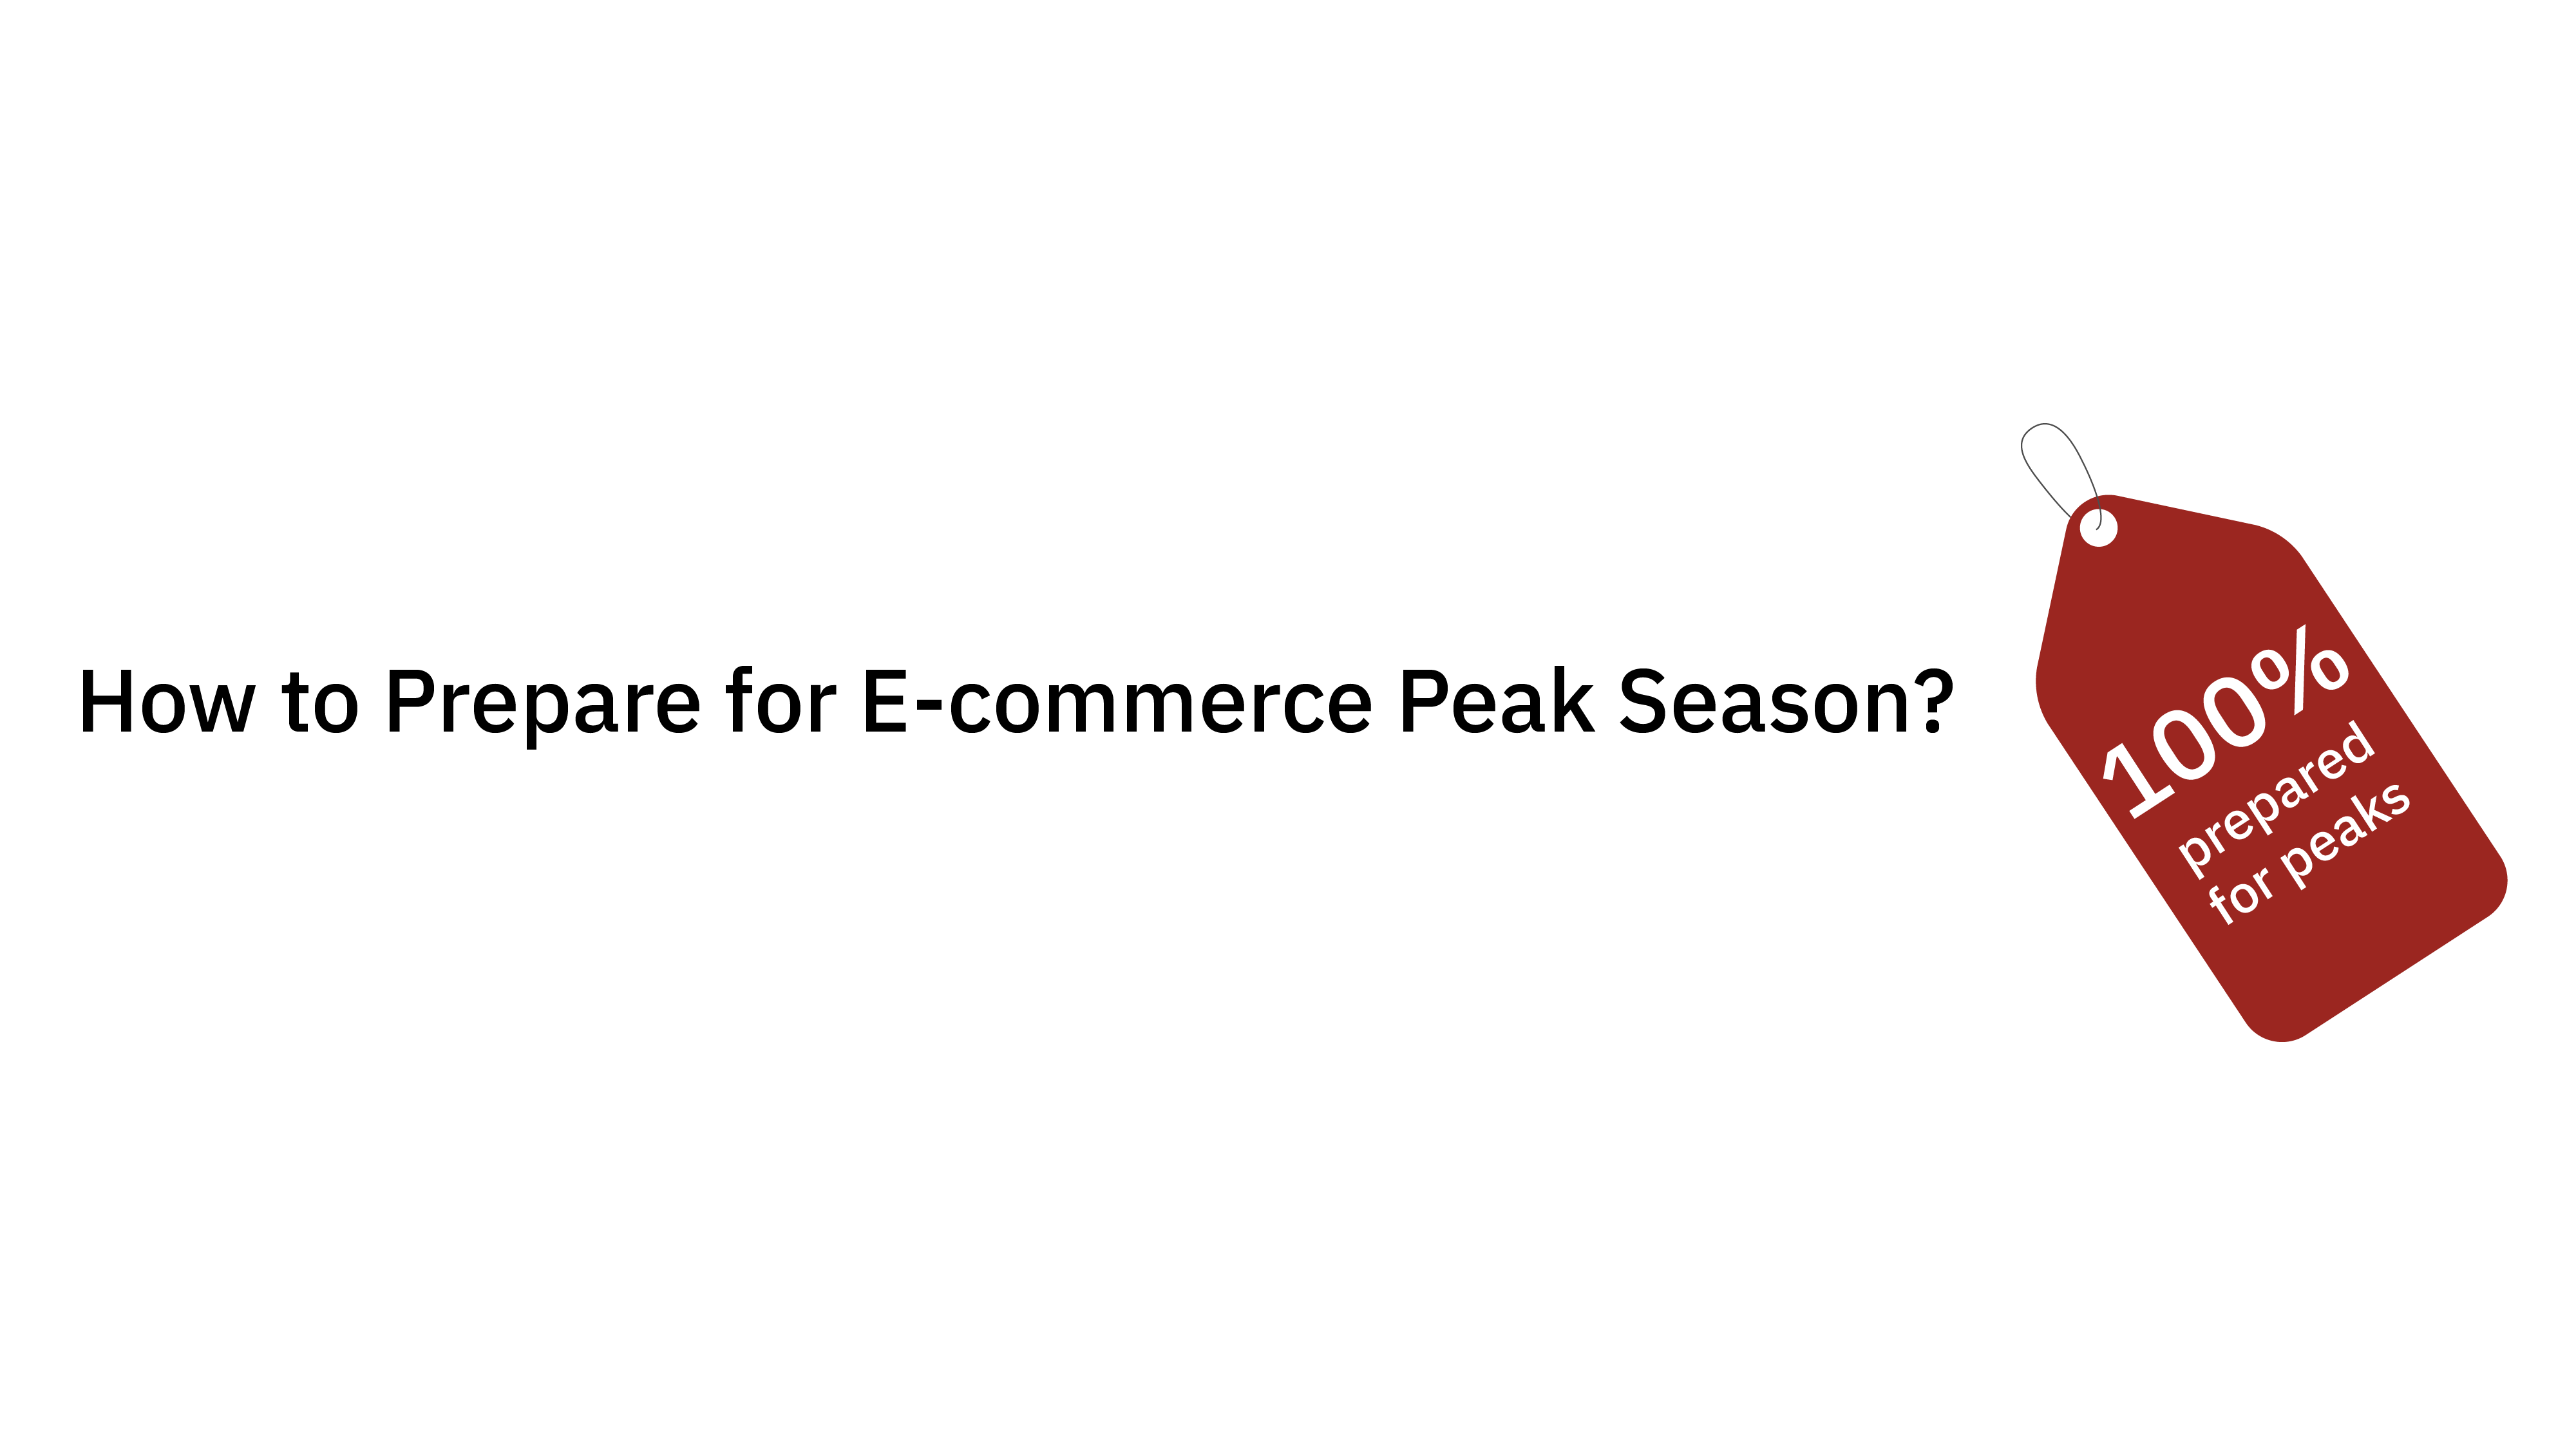 How to prepare for e-commerce peak season